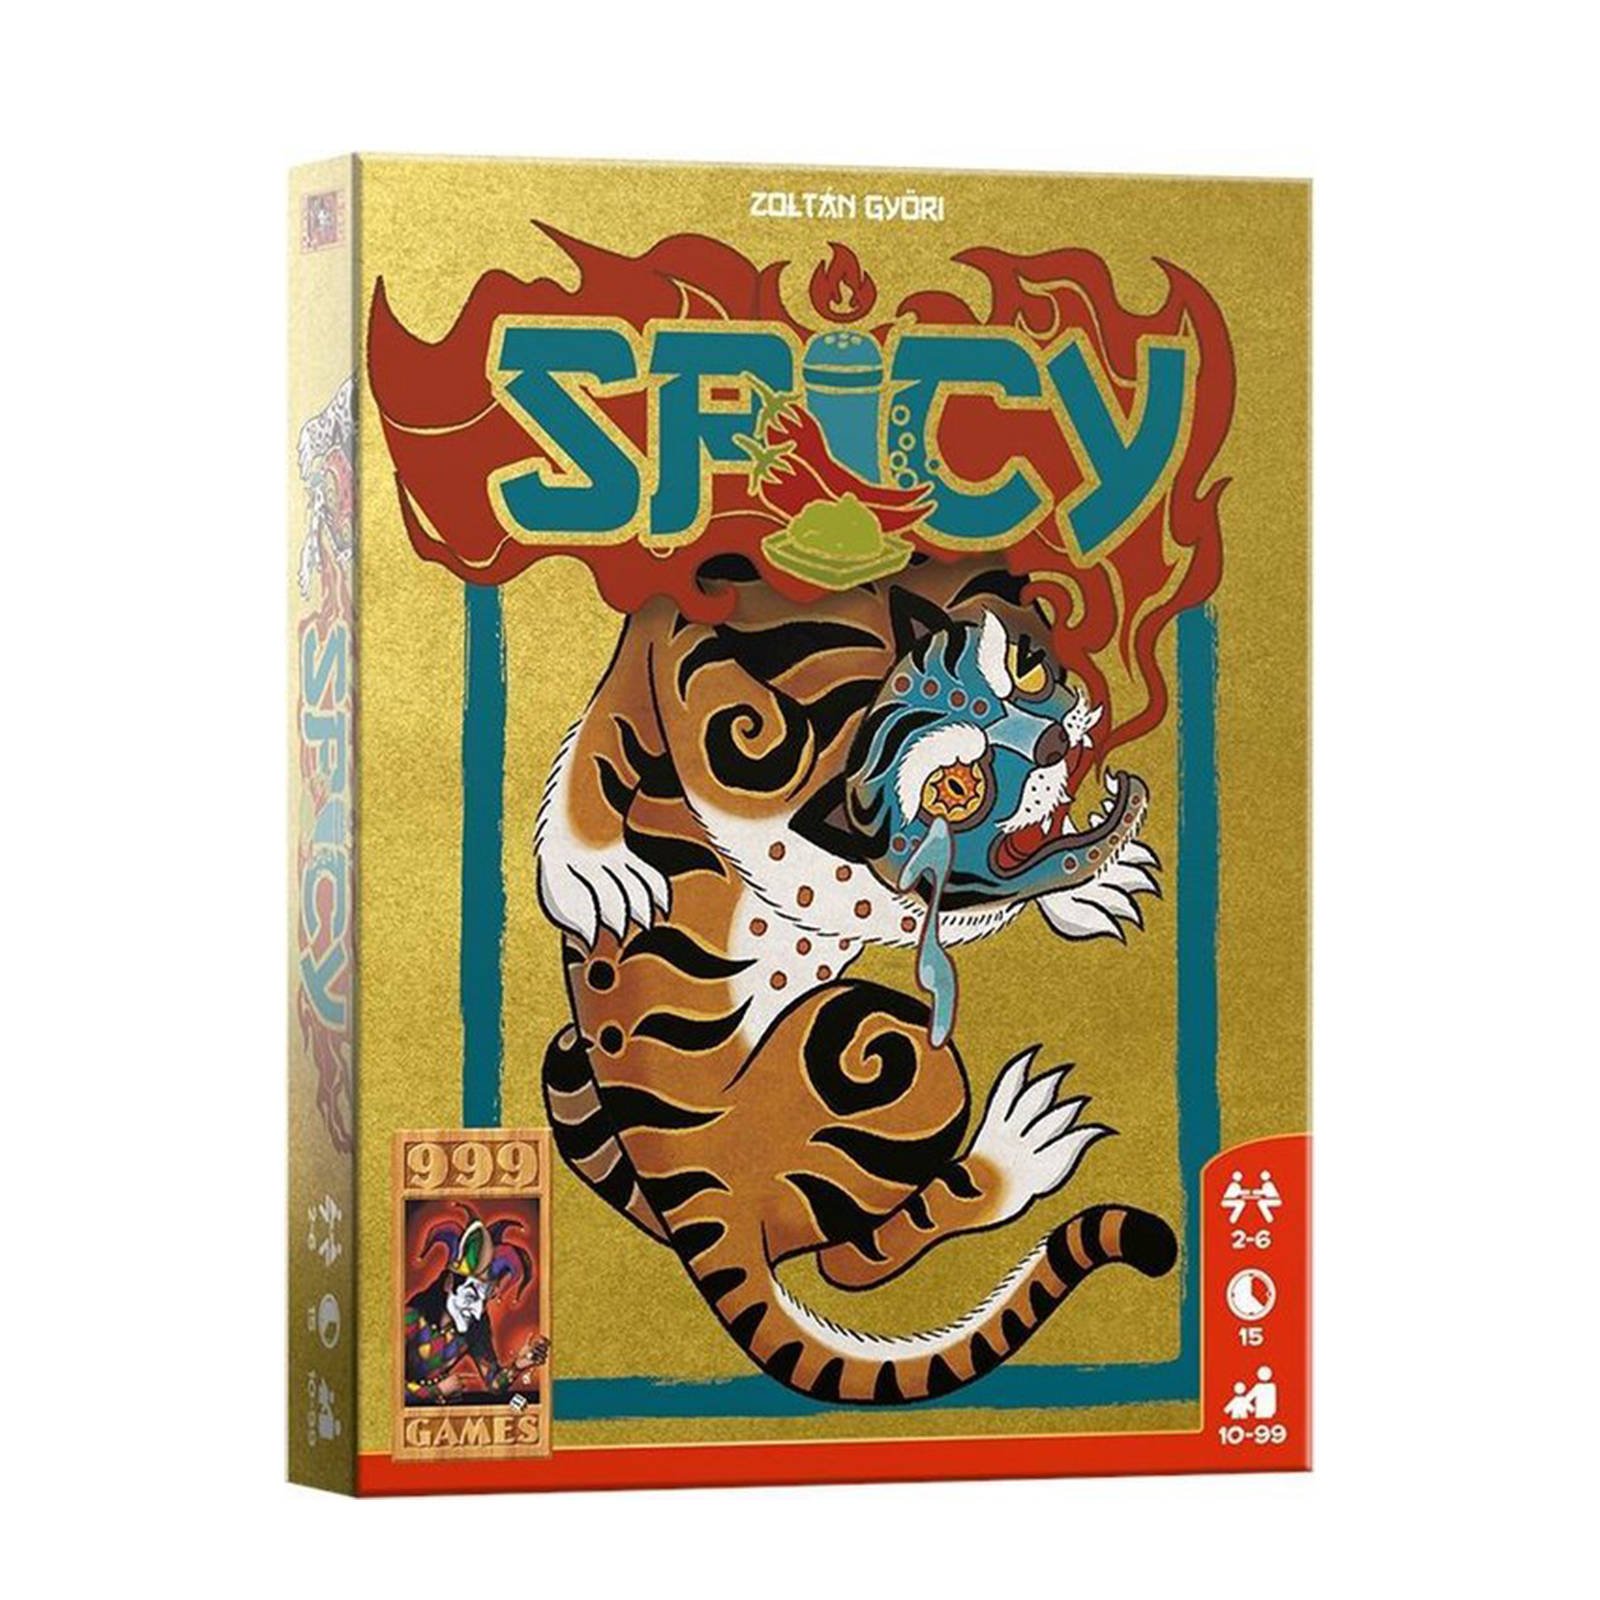 999 Games Spicy Spel Geen Kleur online kopen